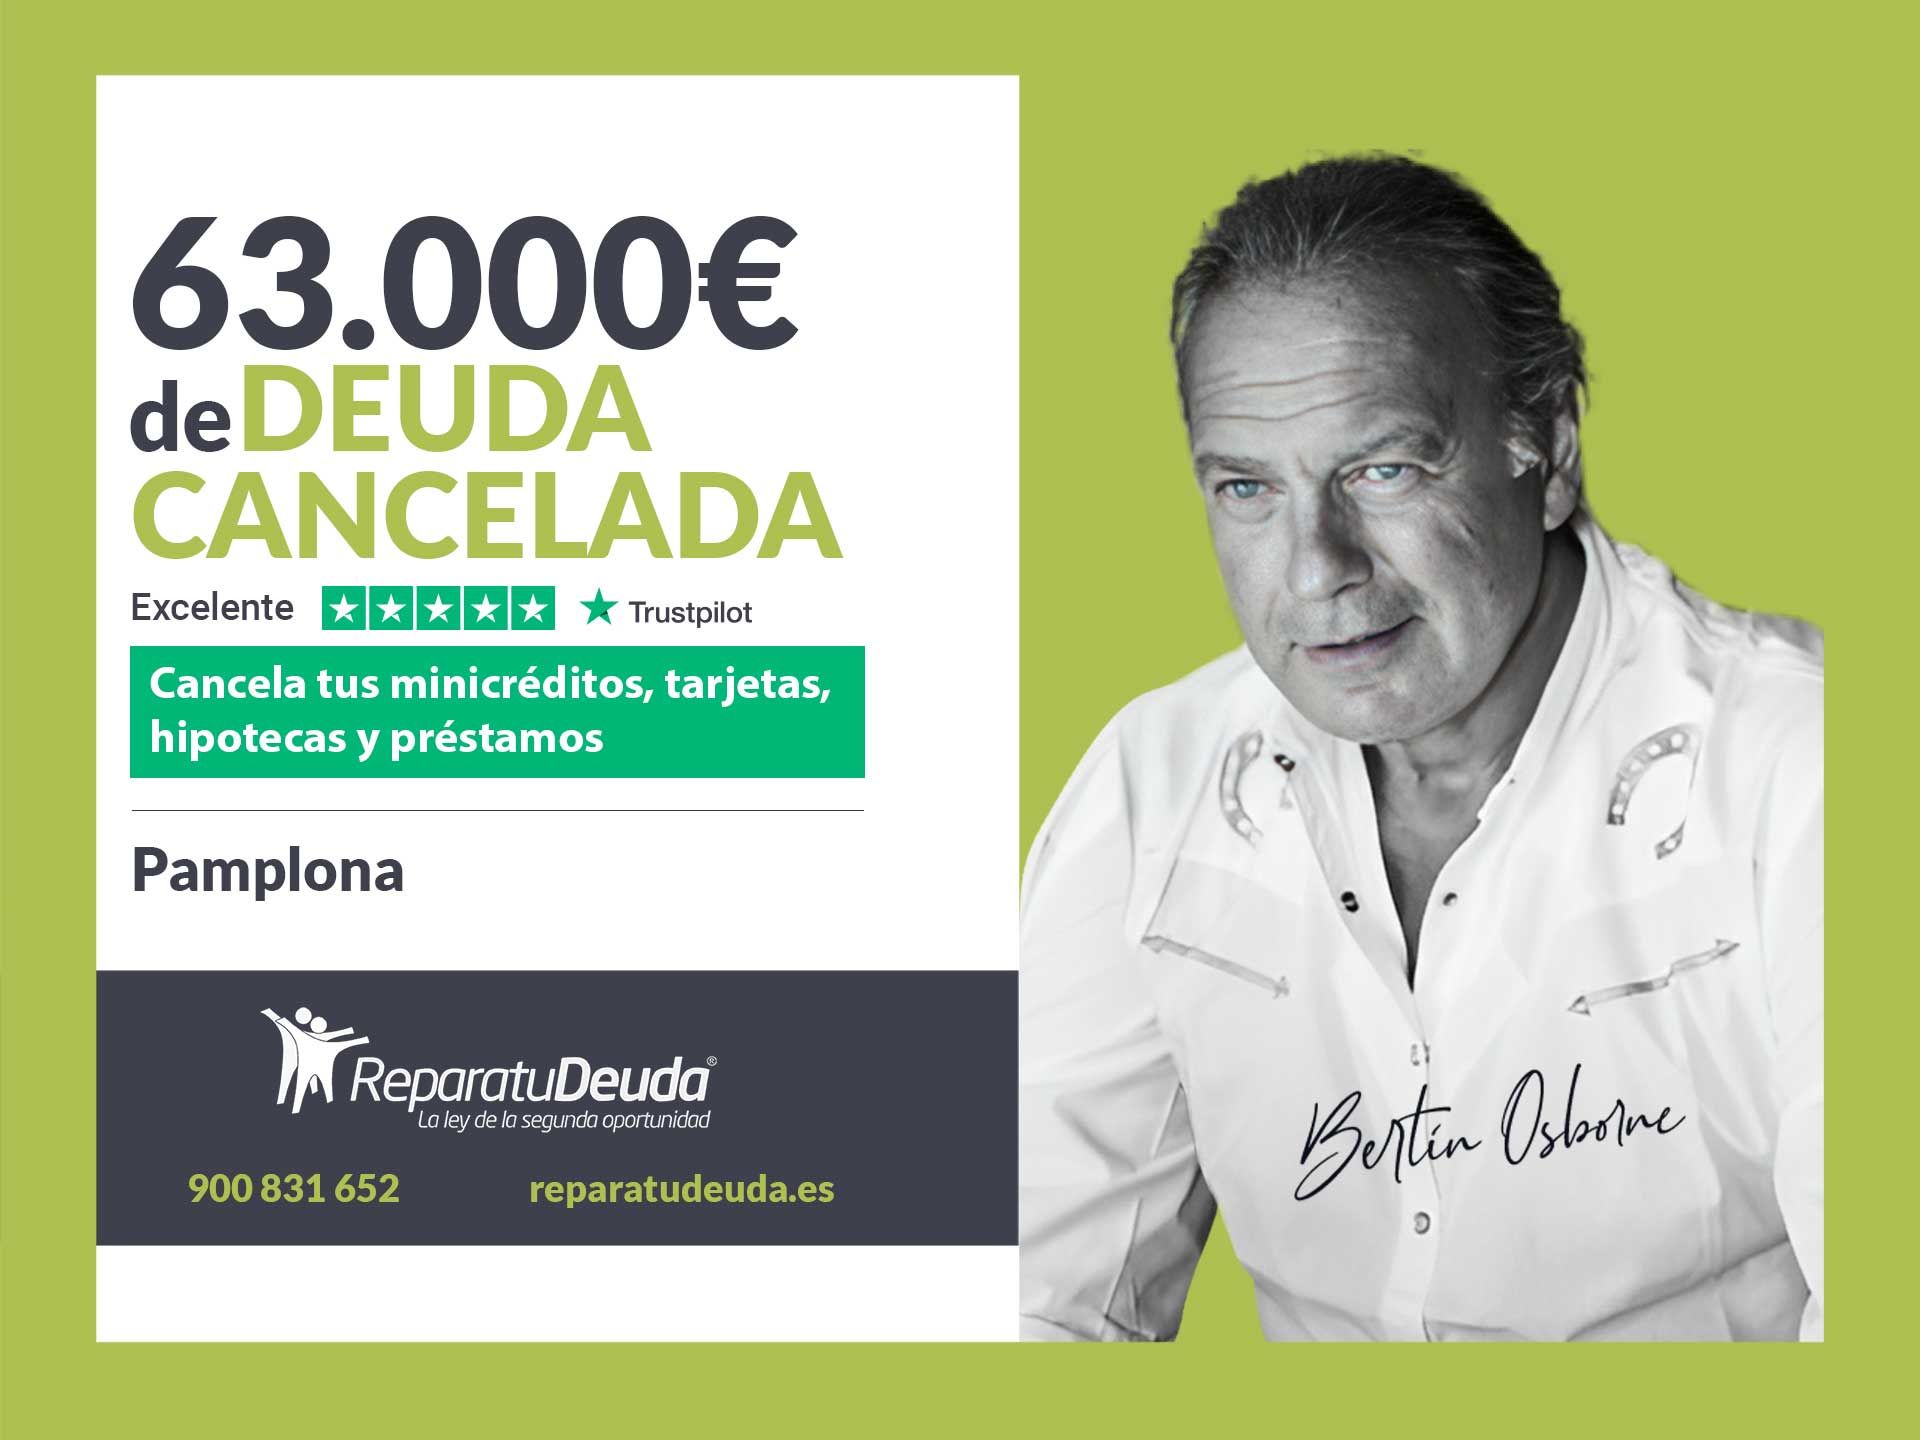 Repara tu Deuda Abogados cancela 63.000? en Pamplona (Navarra) con la Ley de Segunda Oportunidad